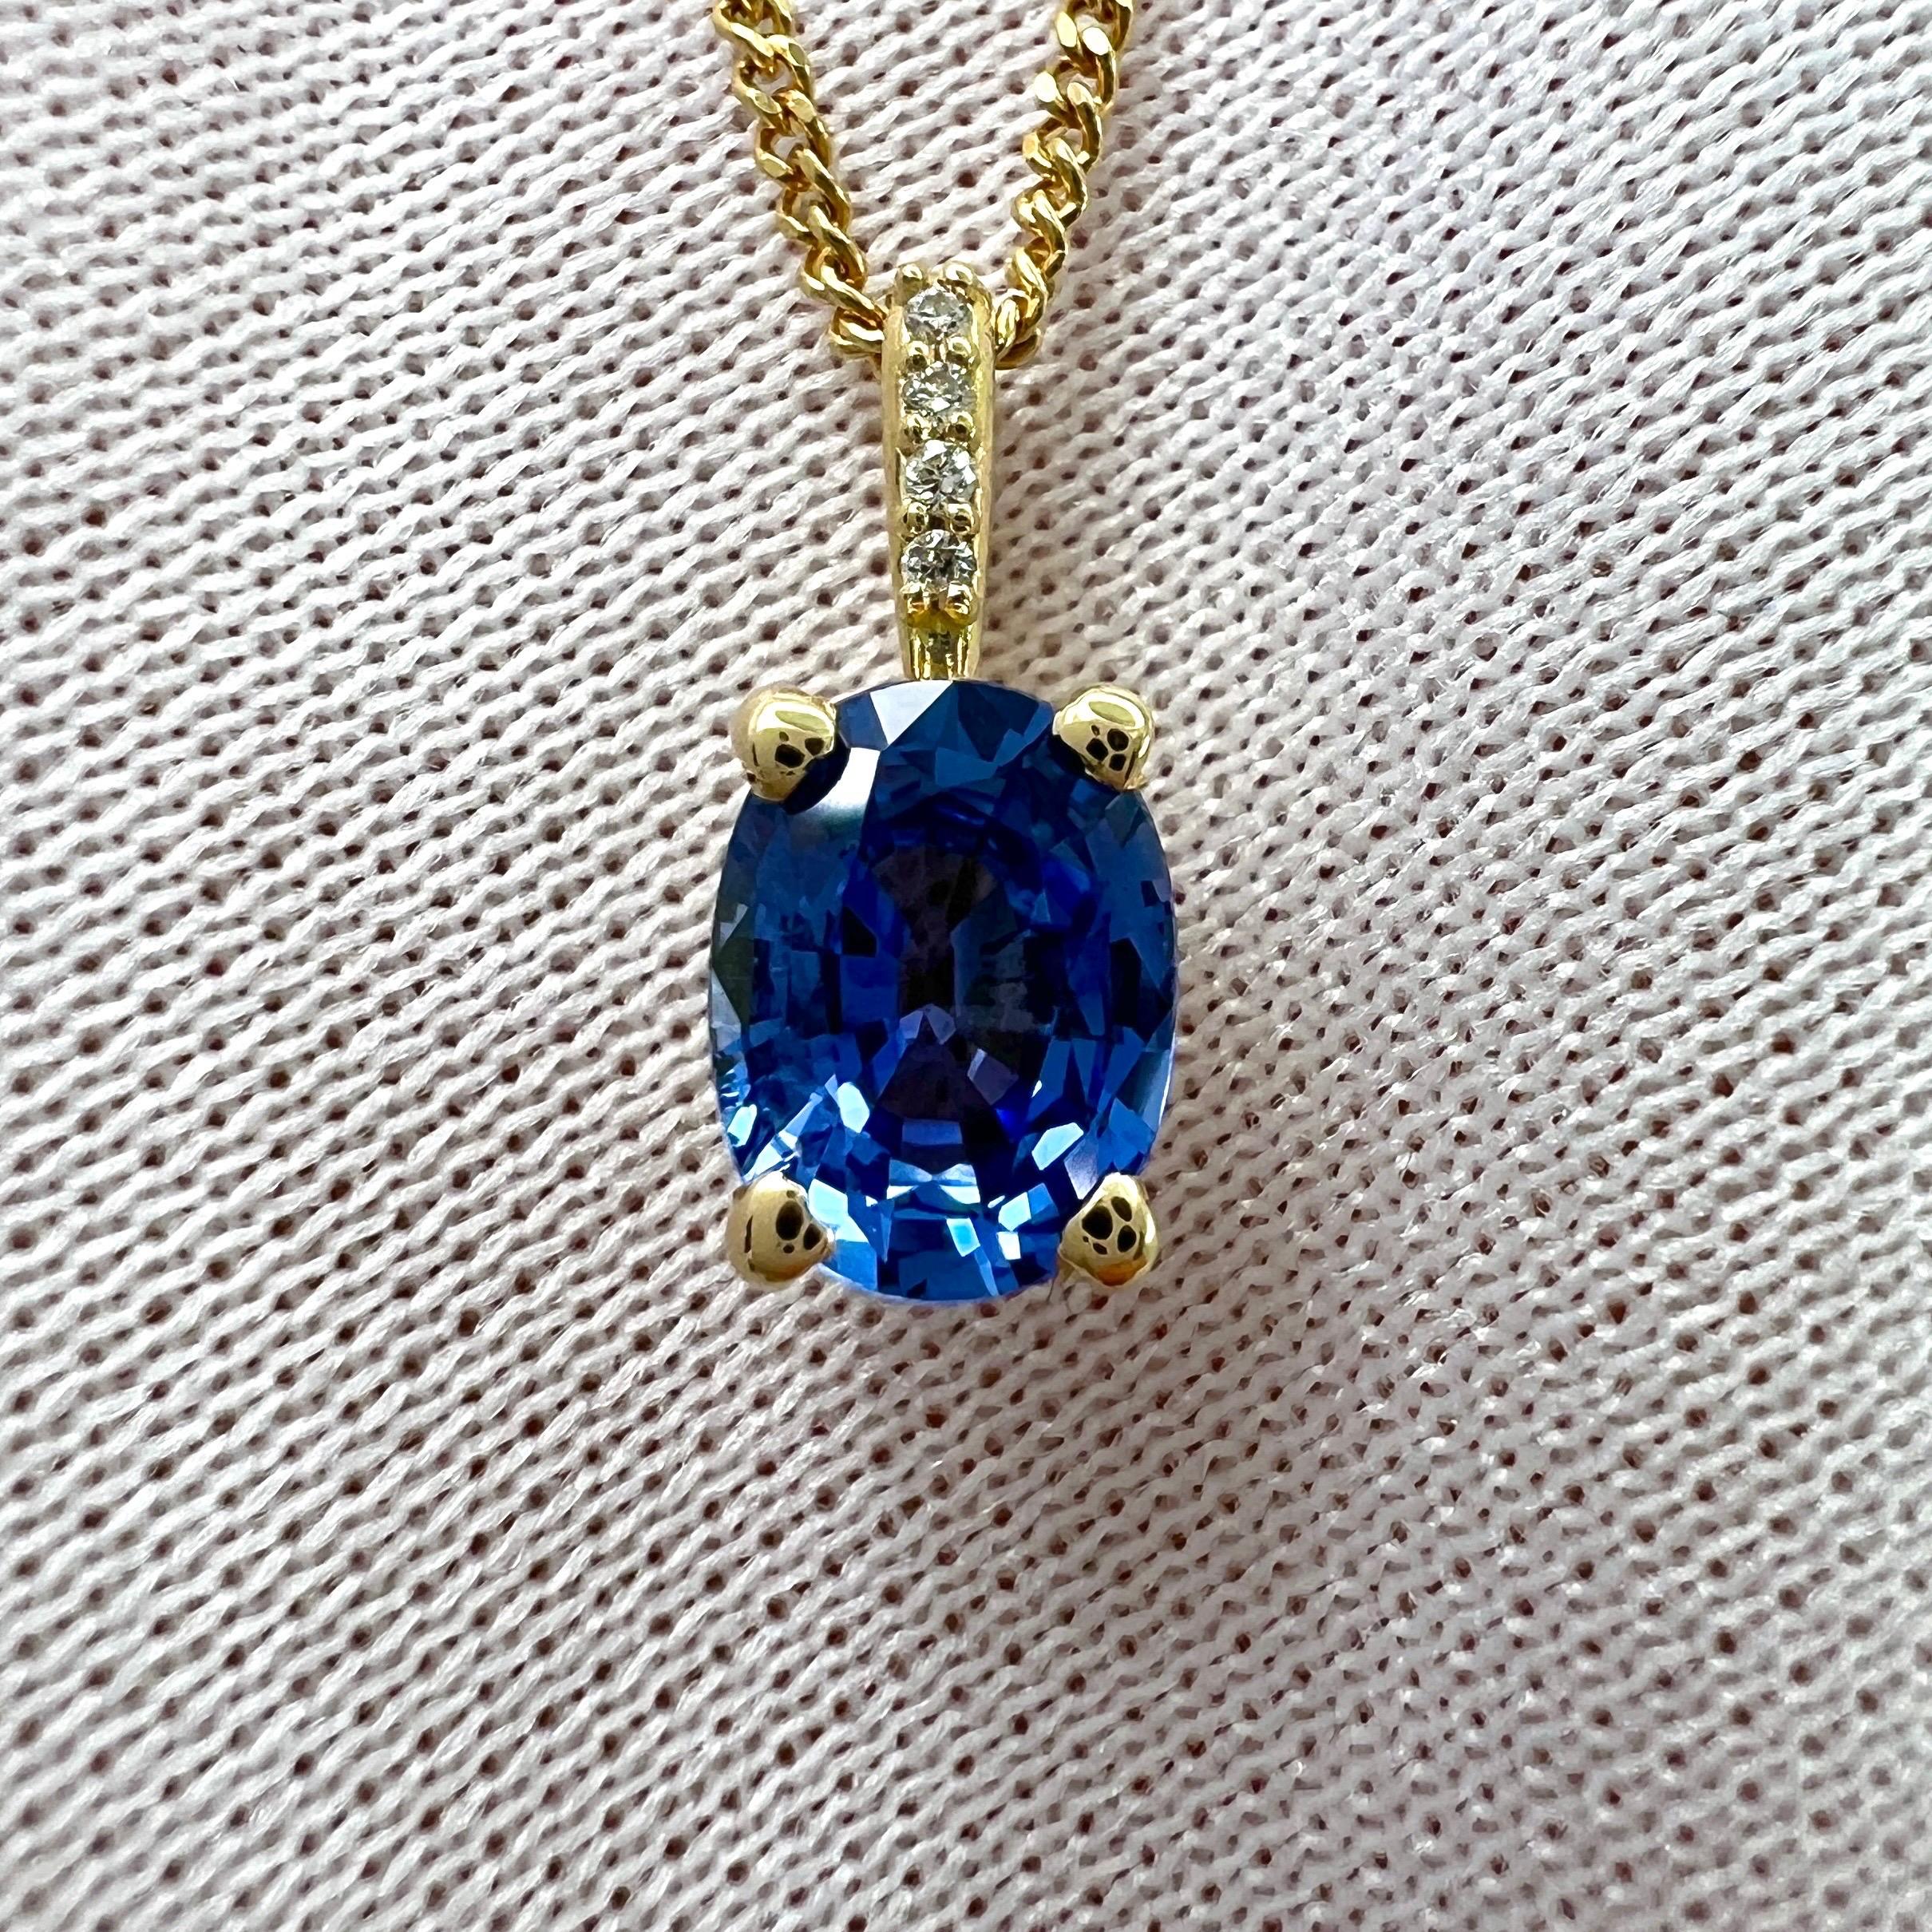 Pendentif en or jaune 18k avec saphir de Ceylan bleu bleu et diamant.

Saphir de 1,00 carat d'une belle couleur bleu bleuet et d'une très bonne clarté. Une pierre très propre avec seulement quelques très petites inclusions naturelles visibles en